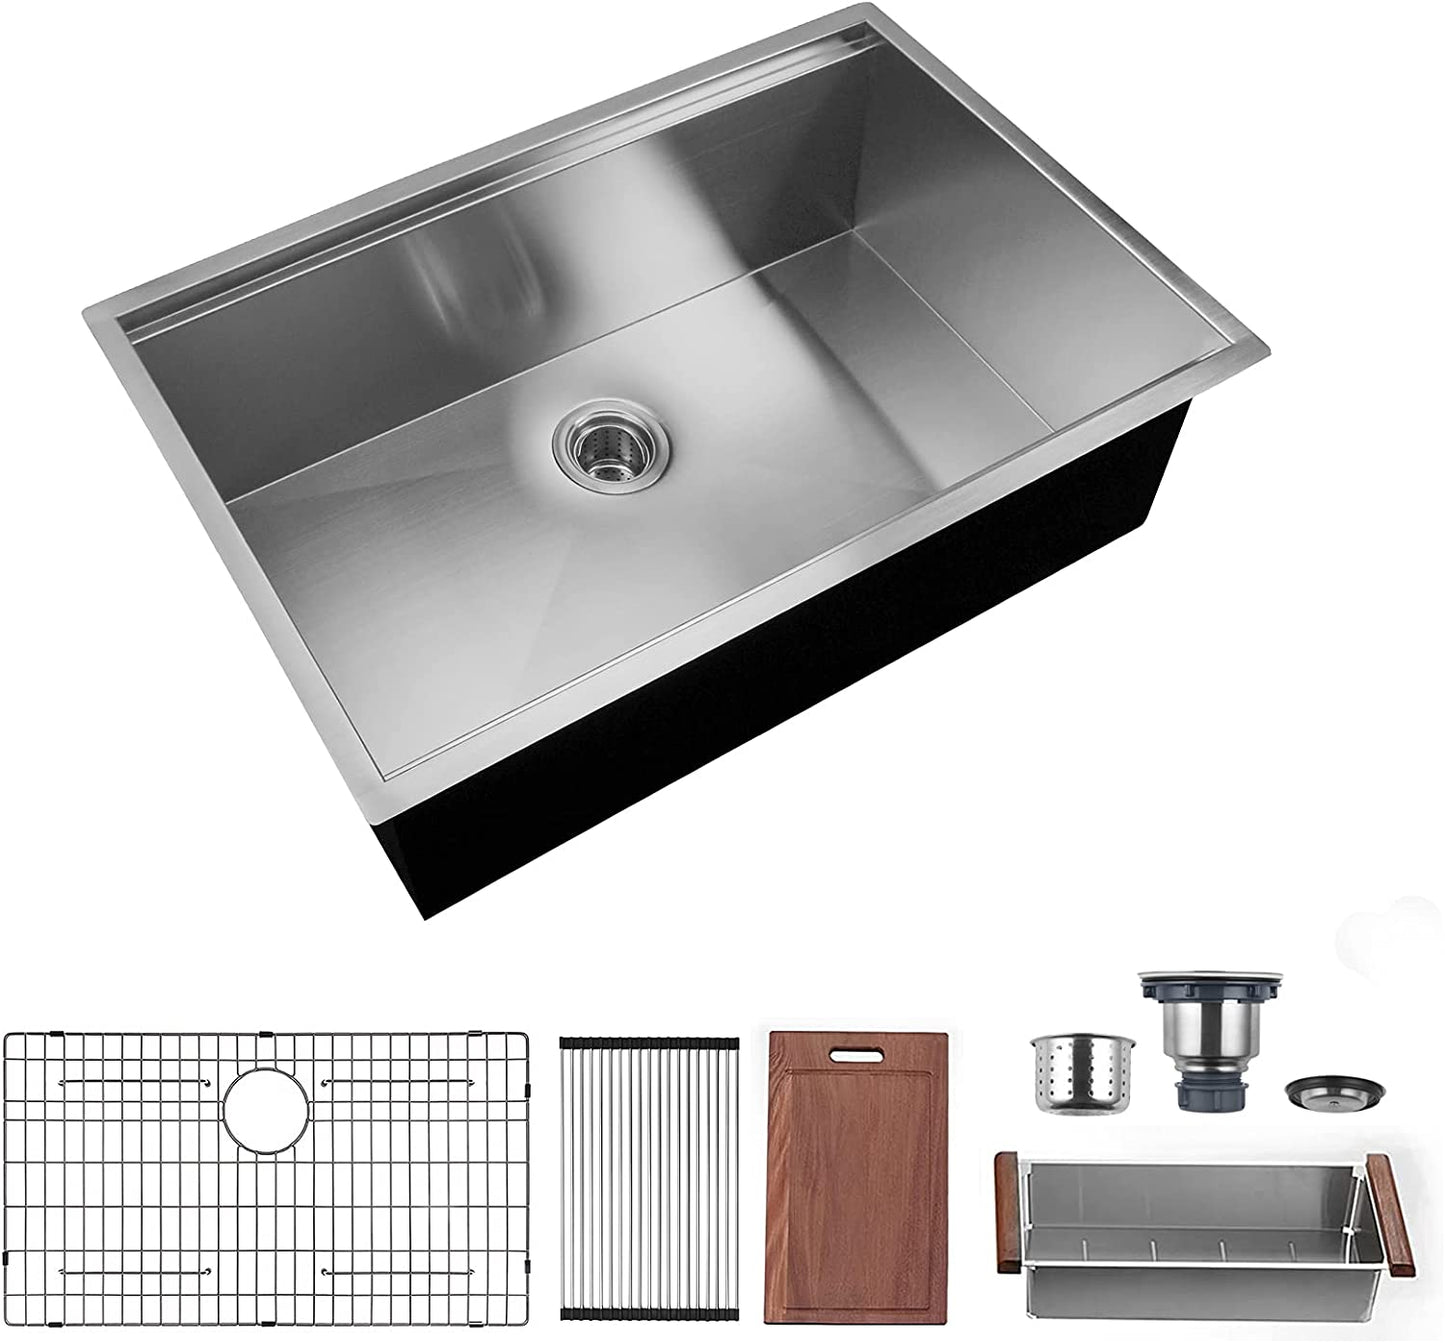 30 x 19 x 9 inch Undermount Kitchen Sink, Workstation Ledge 18 Gauge Stainless Steel Sink Modern Single Bowl Kitchen Sink